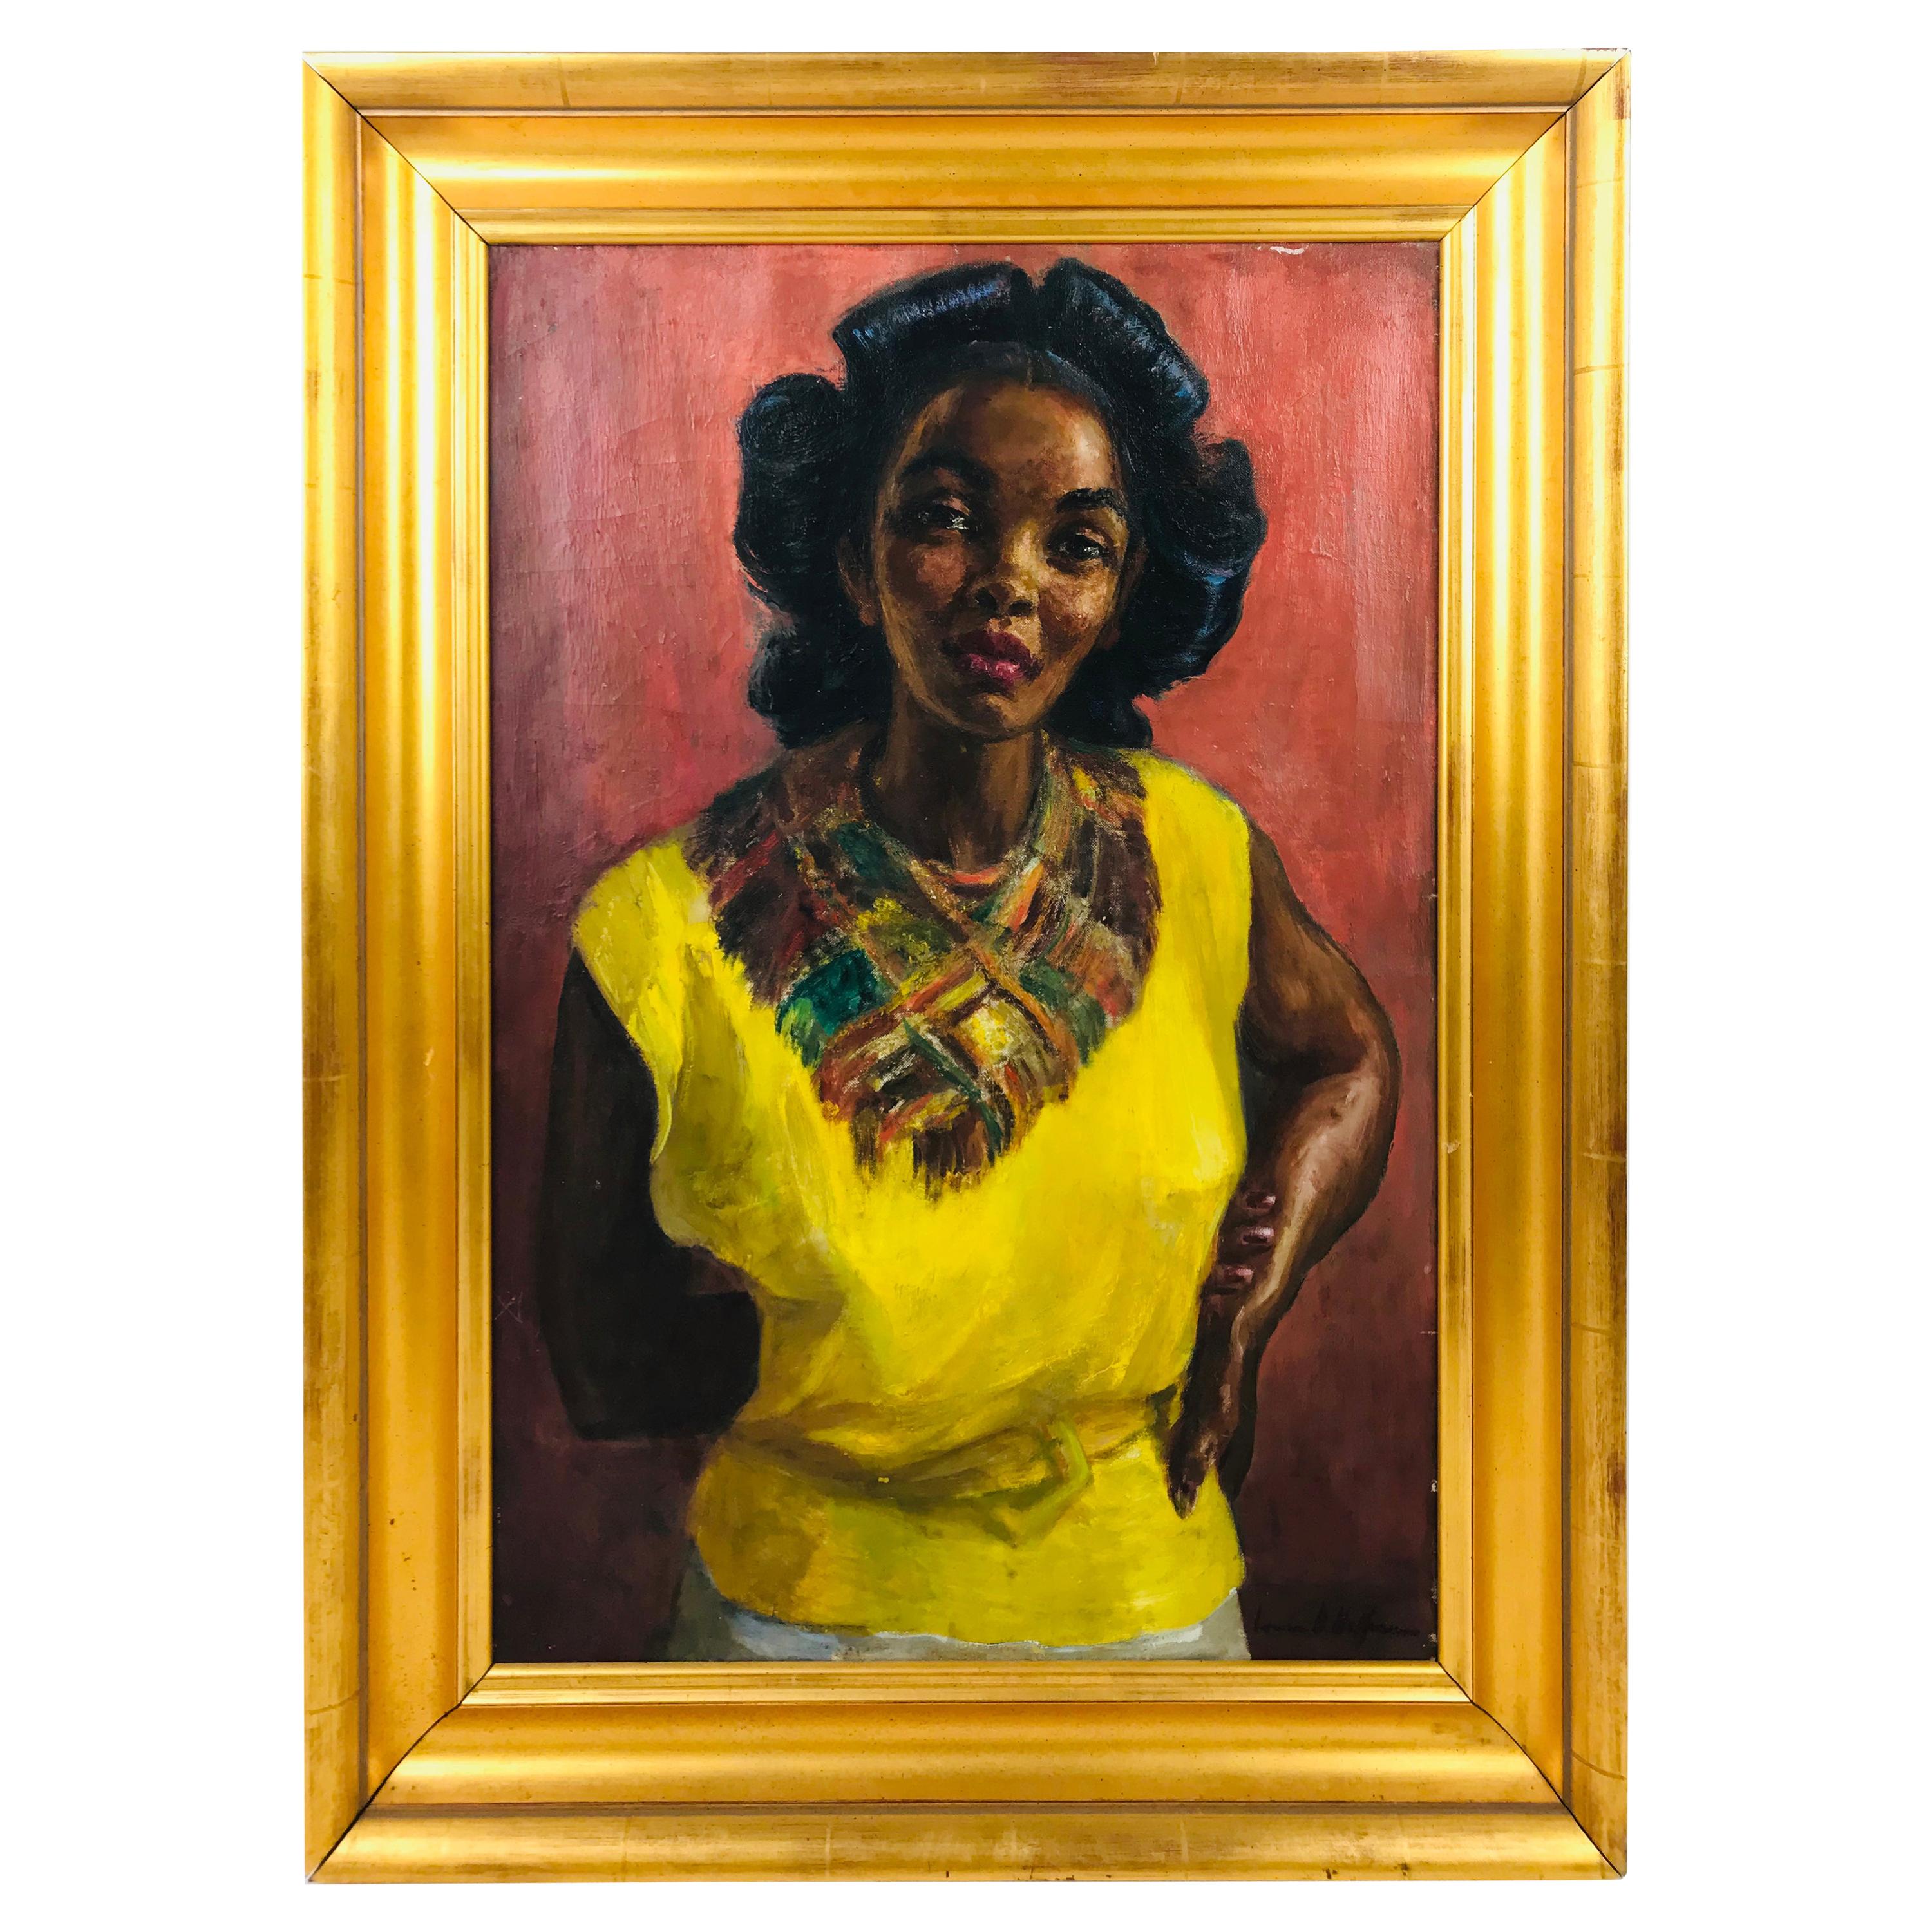 Portrait of a Women in Yellow Dress Oil on Canvas by Irwin D. Hoffman